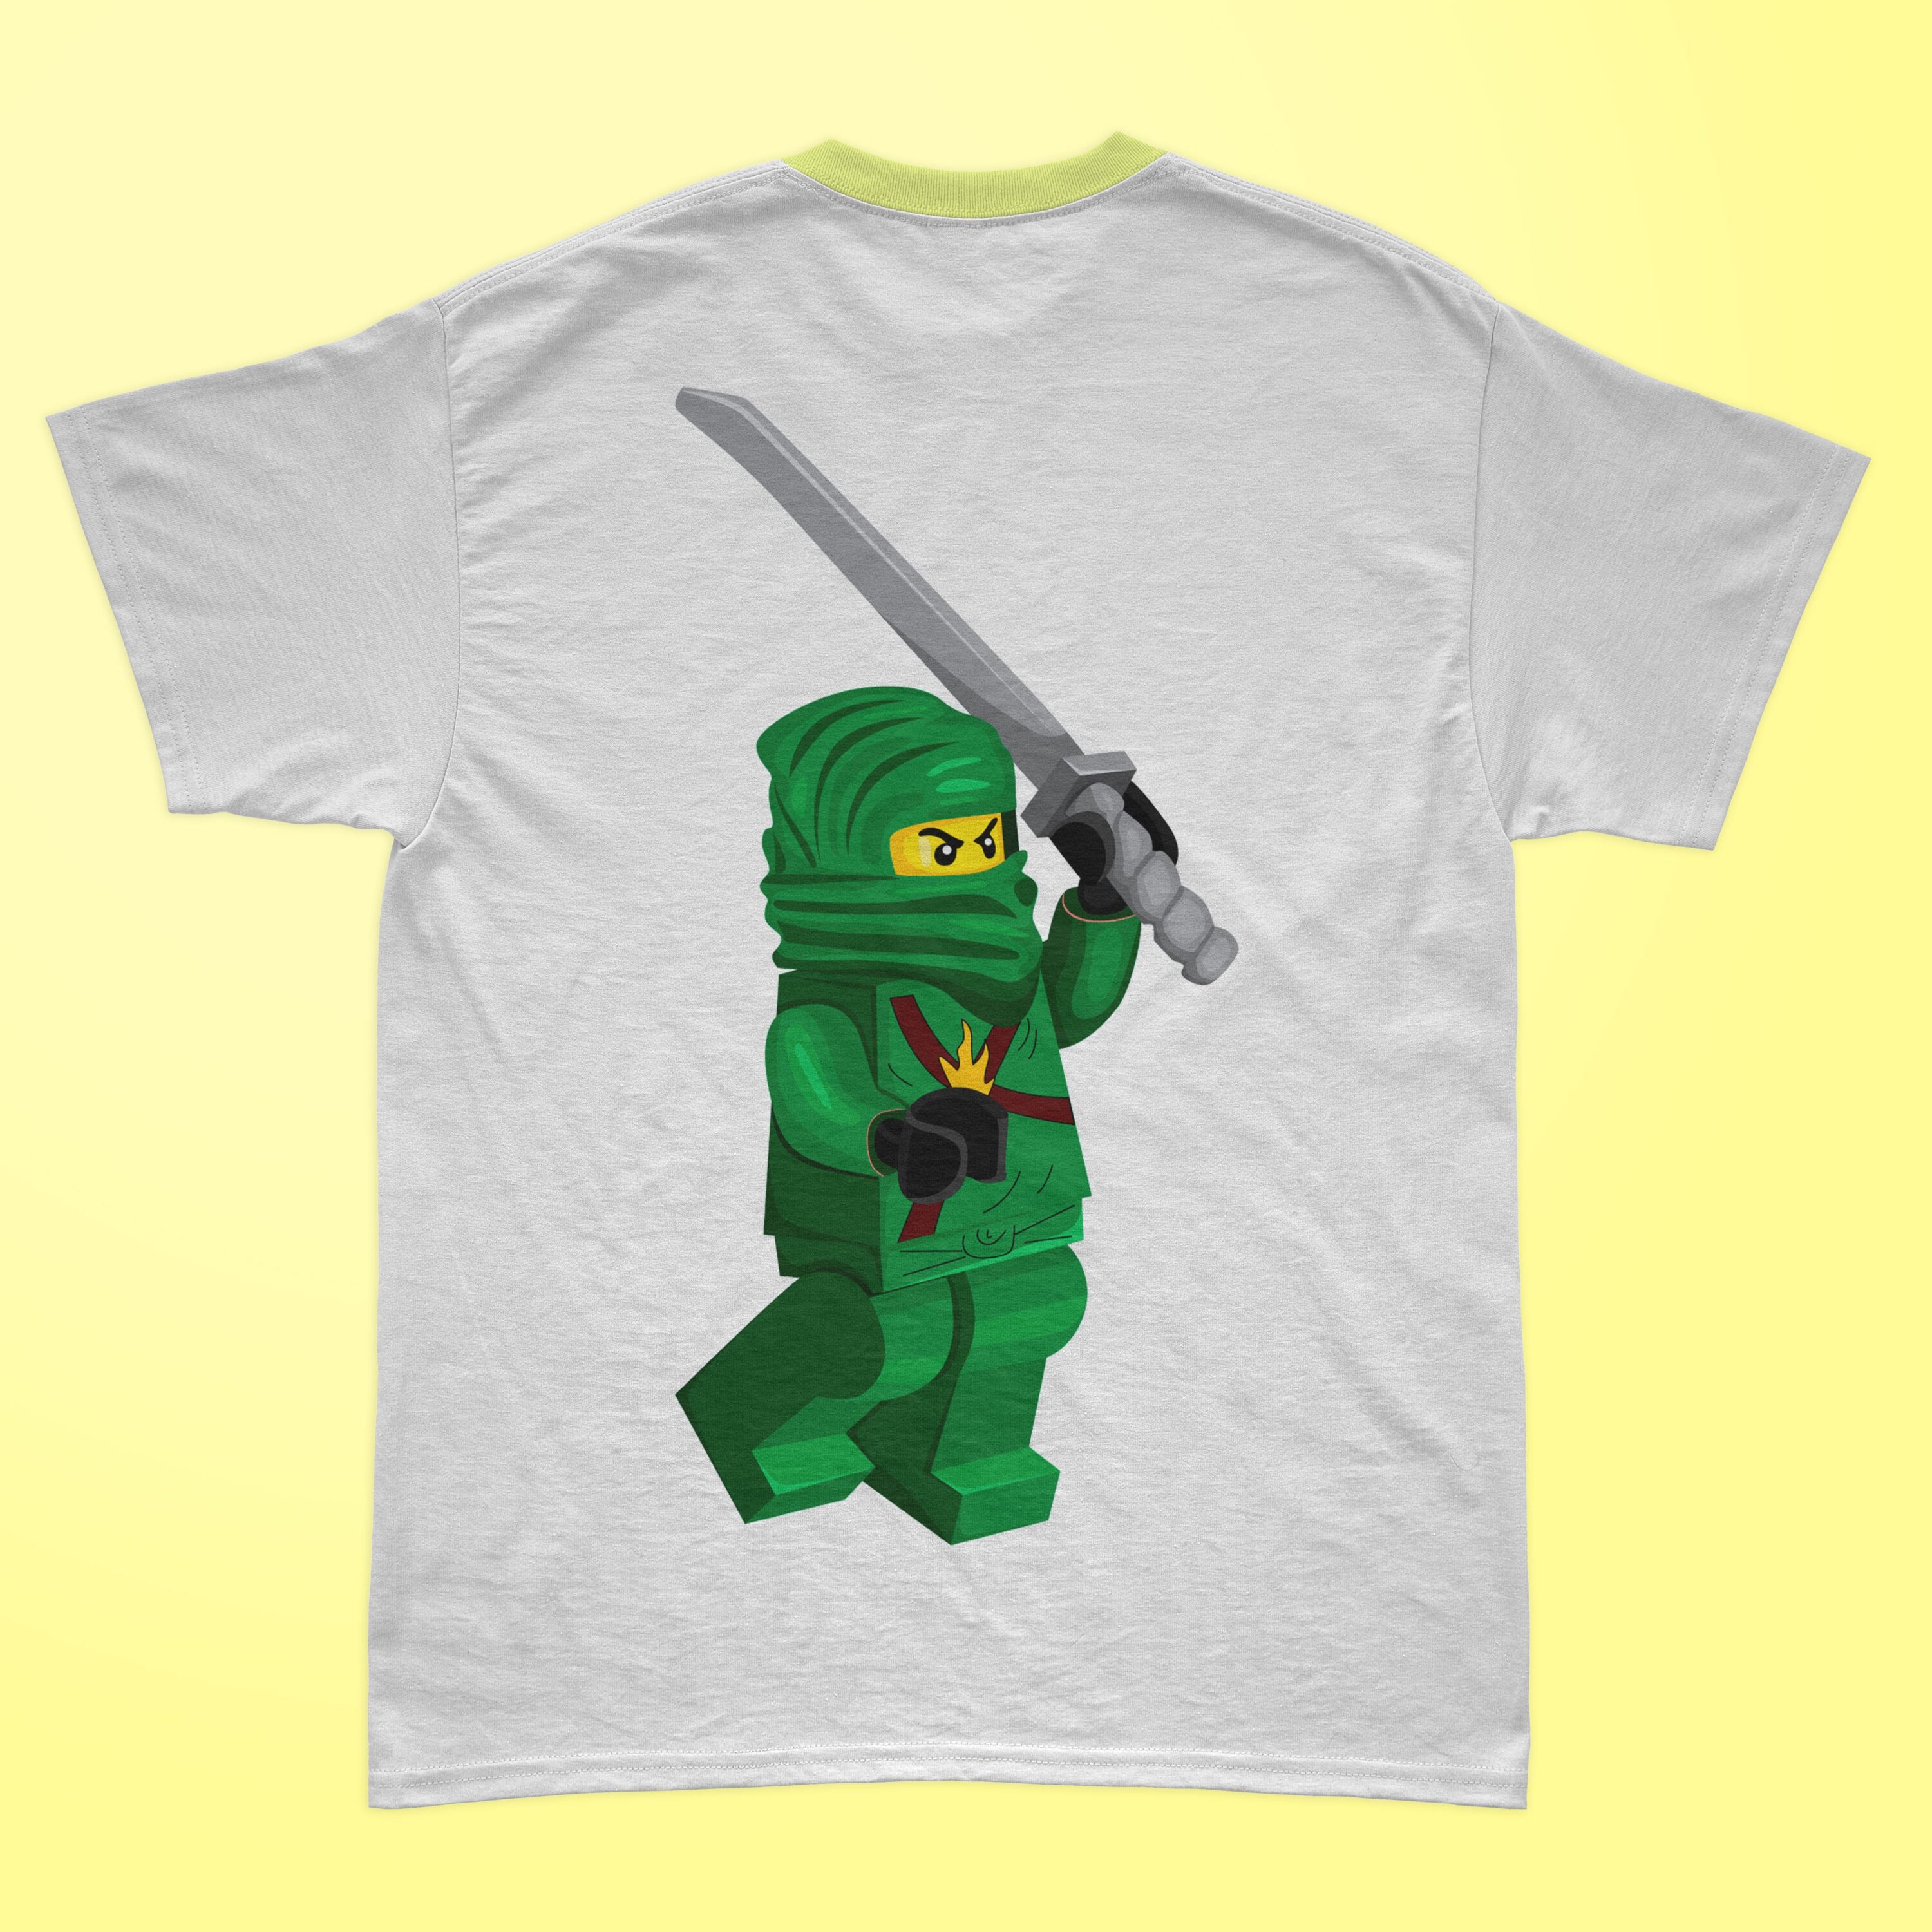 Green lego ninjago printed on the t-shirt.